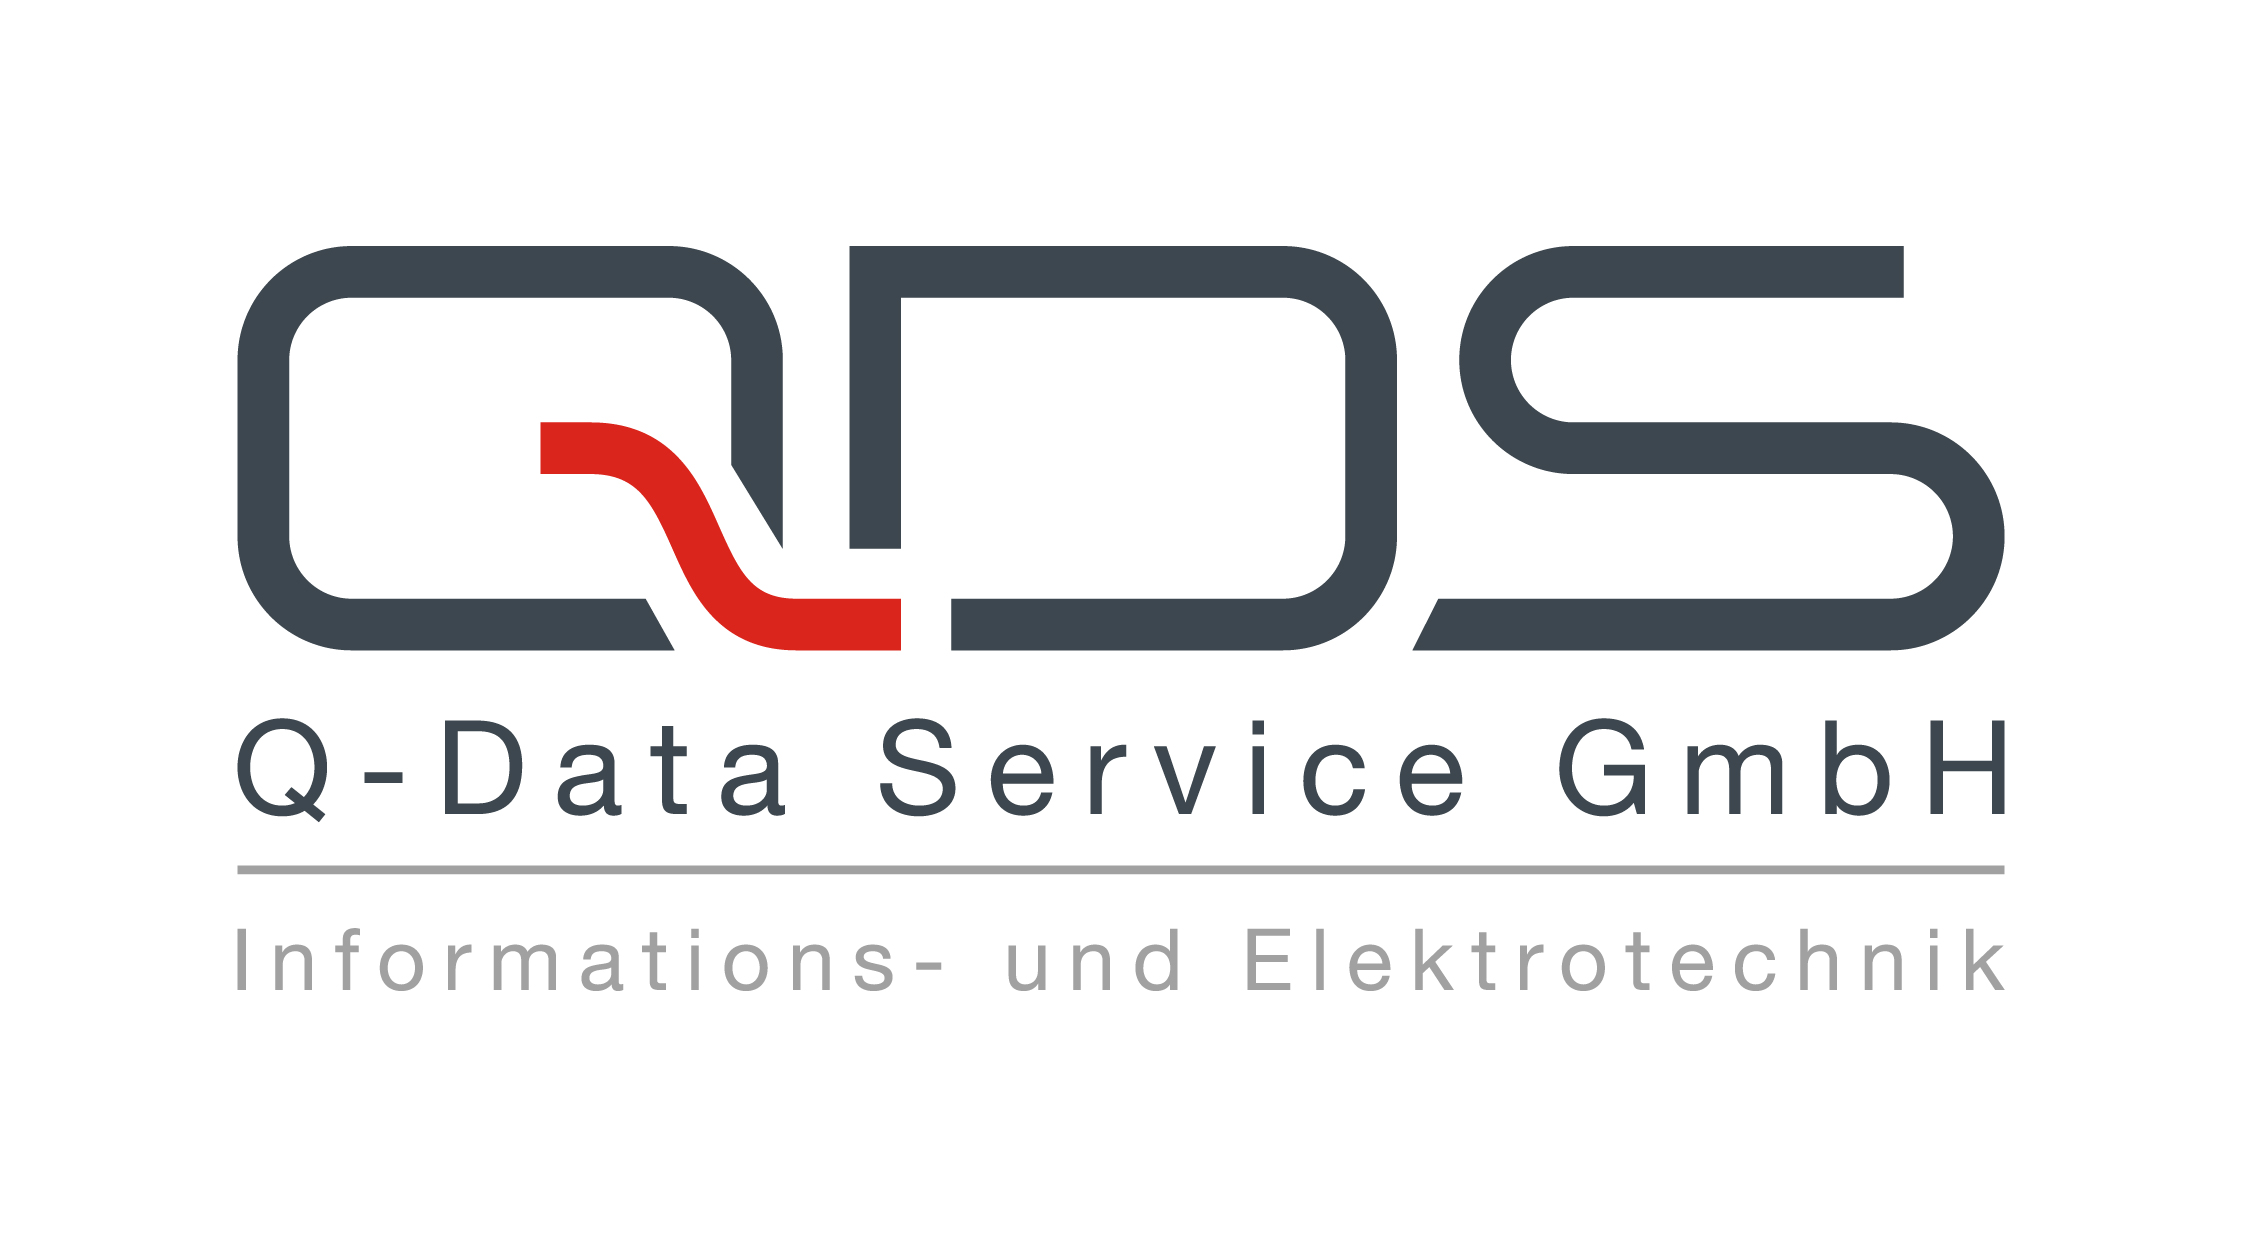 Q-Data Service GmbH Informations- und Elektrotechnik